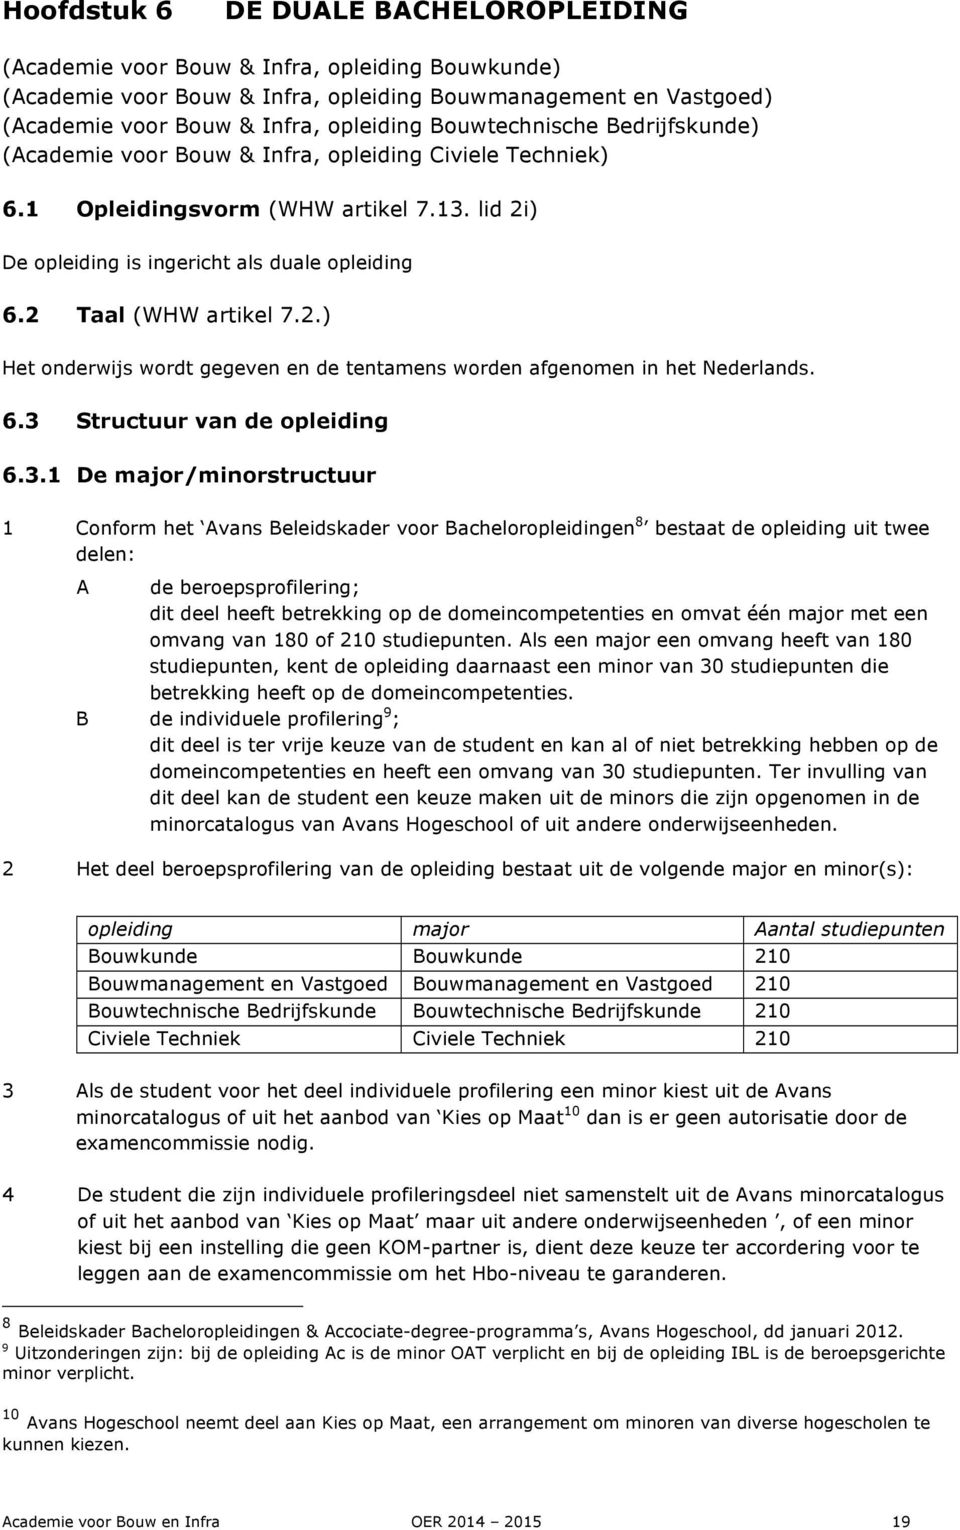 2 Taal (WHW artikel 7.2.) Het onderwijs wordt gegeven en de tentamens worden afgenomen in het Nederlands. 6.3 